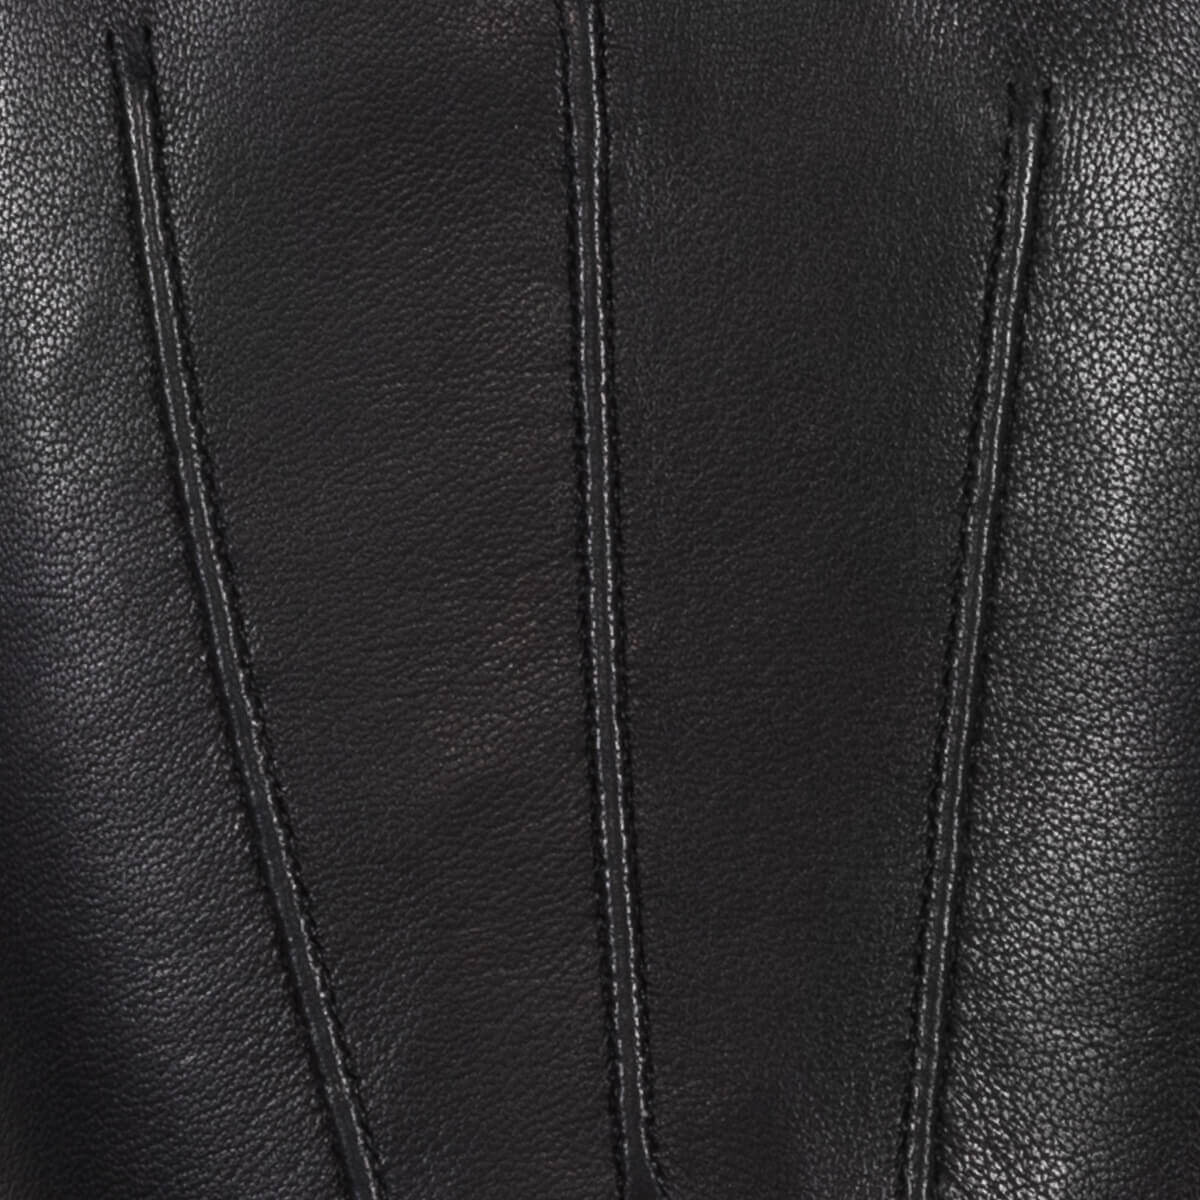 Gants en cuir pour hommes noirs - Écran Tactile - Doublure Chaude - Gants en cuir haut de gamme - Conçus à Amsterdam - Schwartz & von Halen® - 4